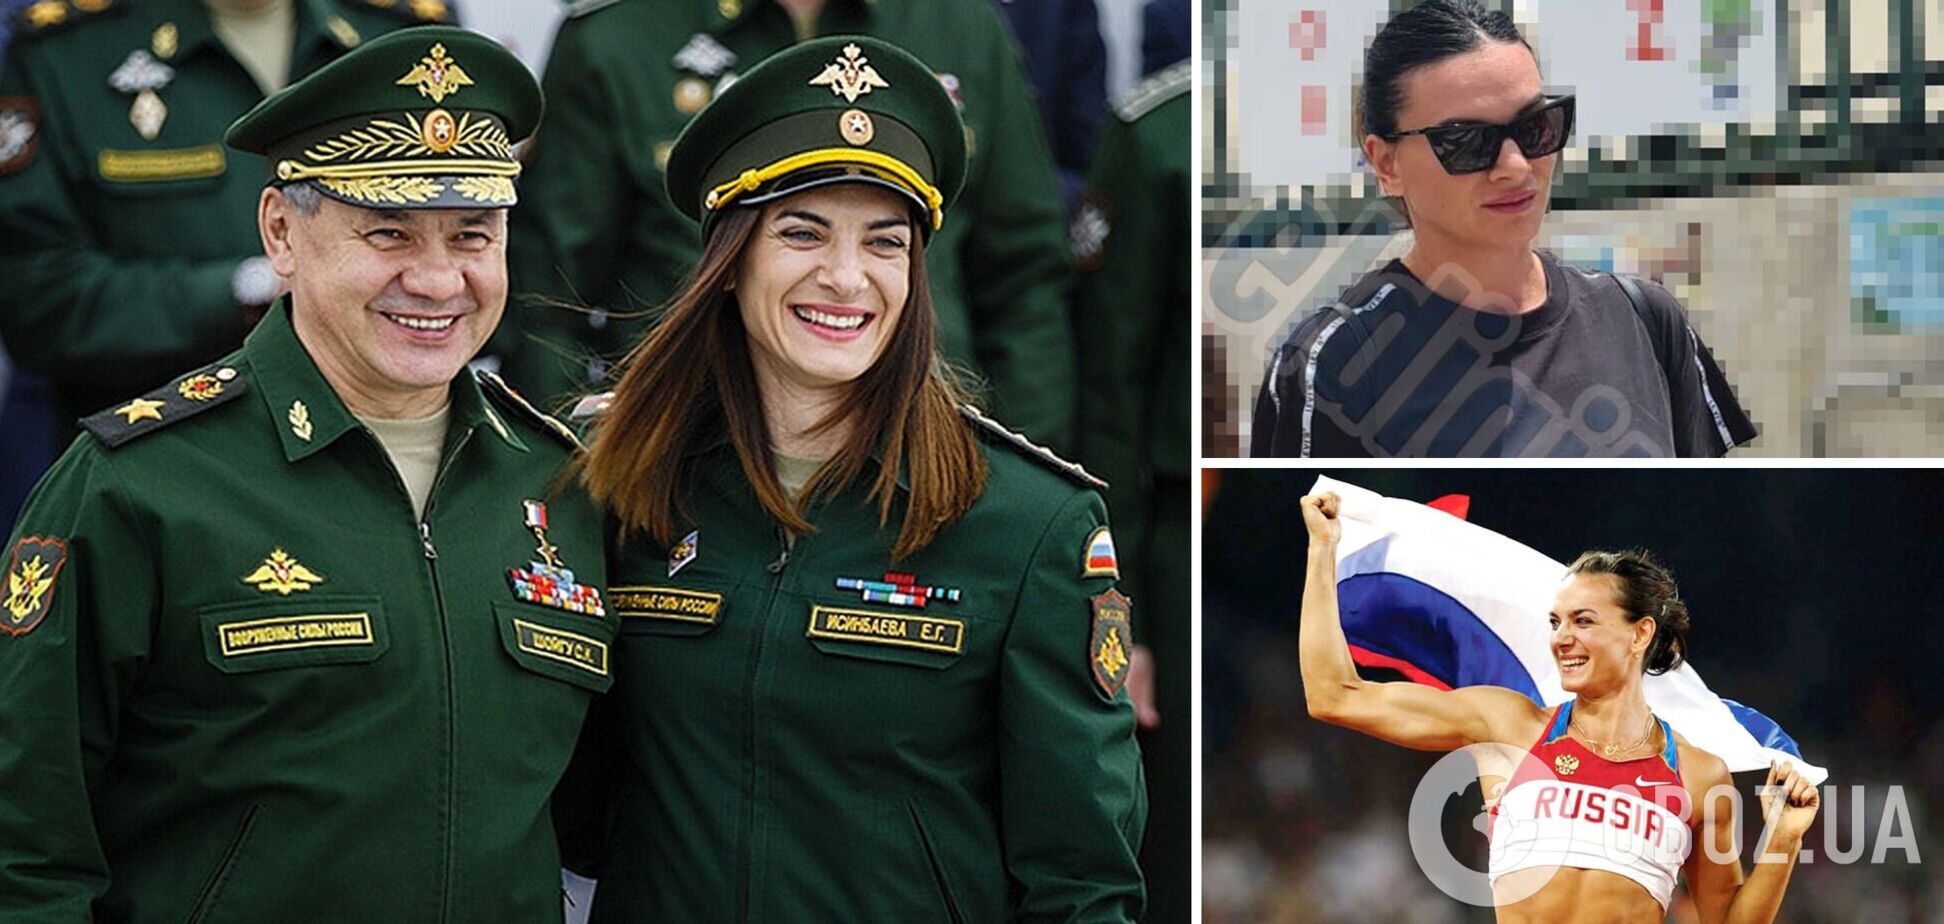 Скандал дня: знамениту російську чемпіонку Олімпіади з армії РФ засікли в Іспанії. Фото